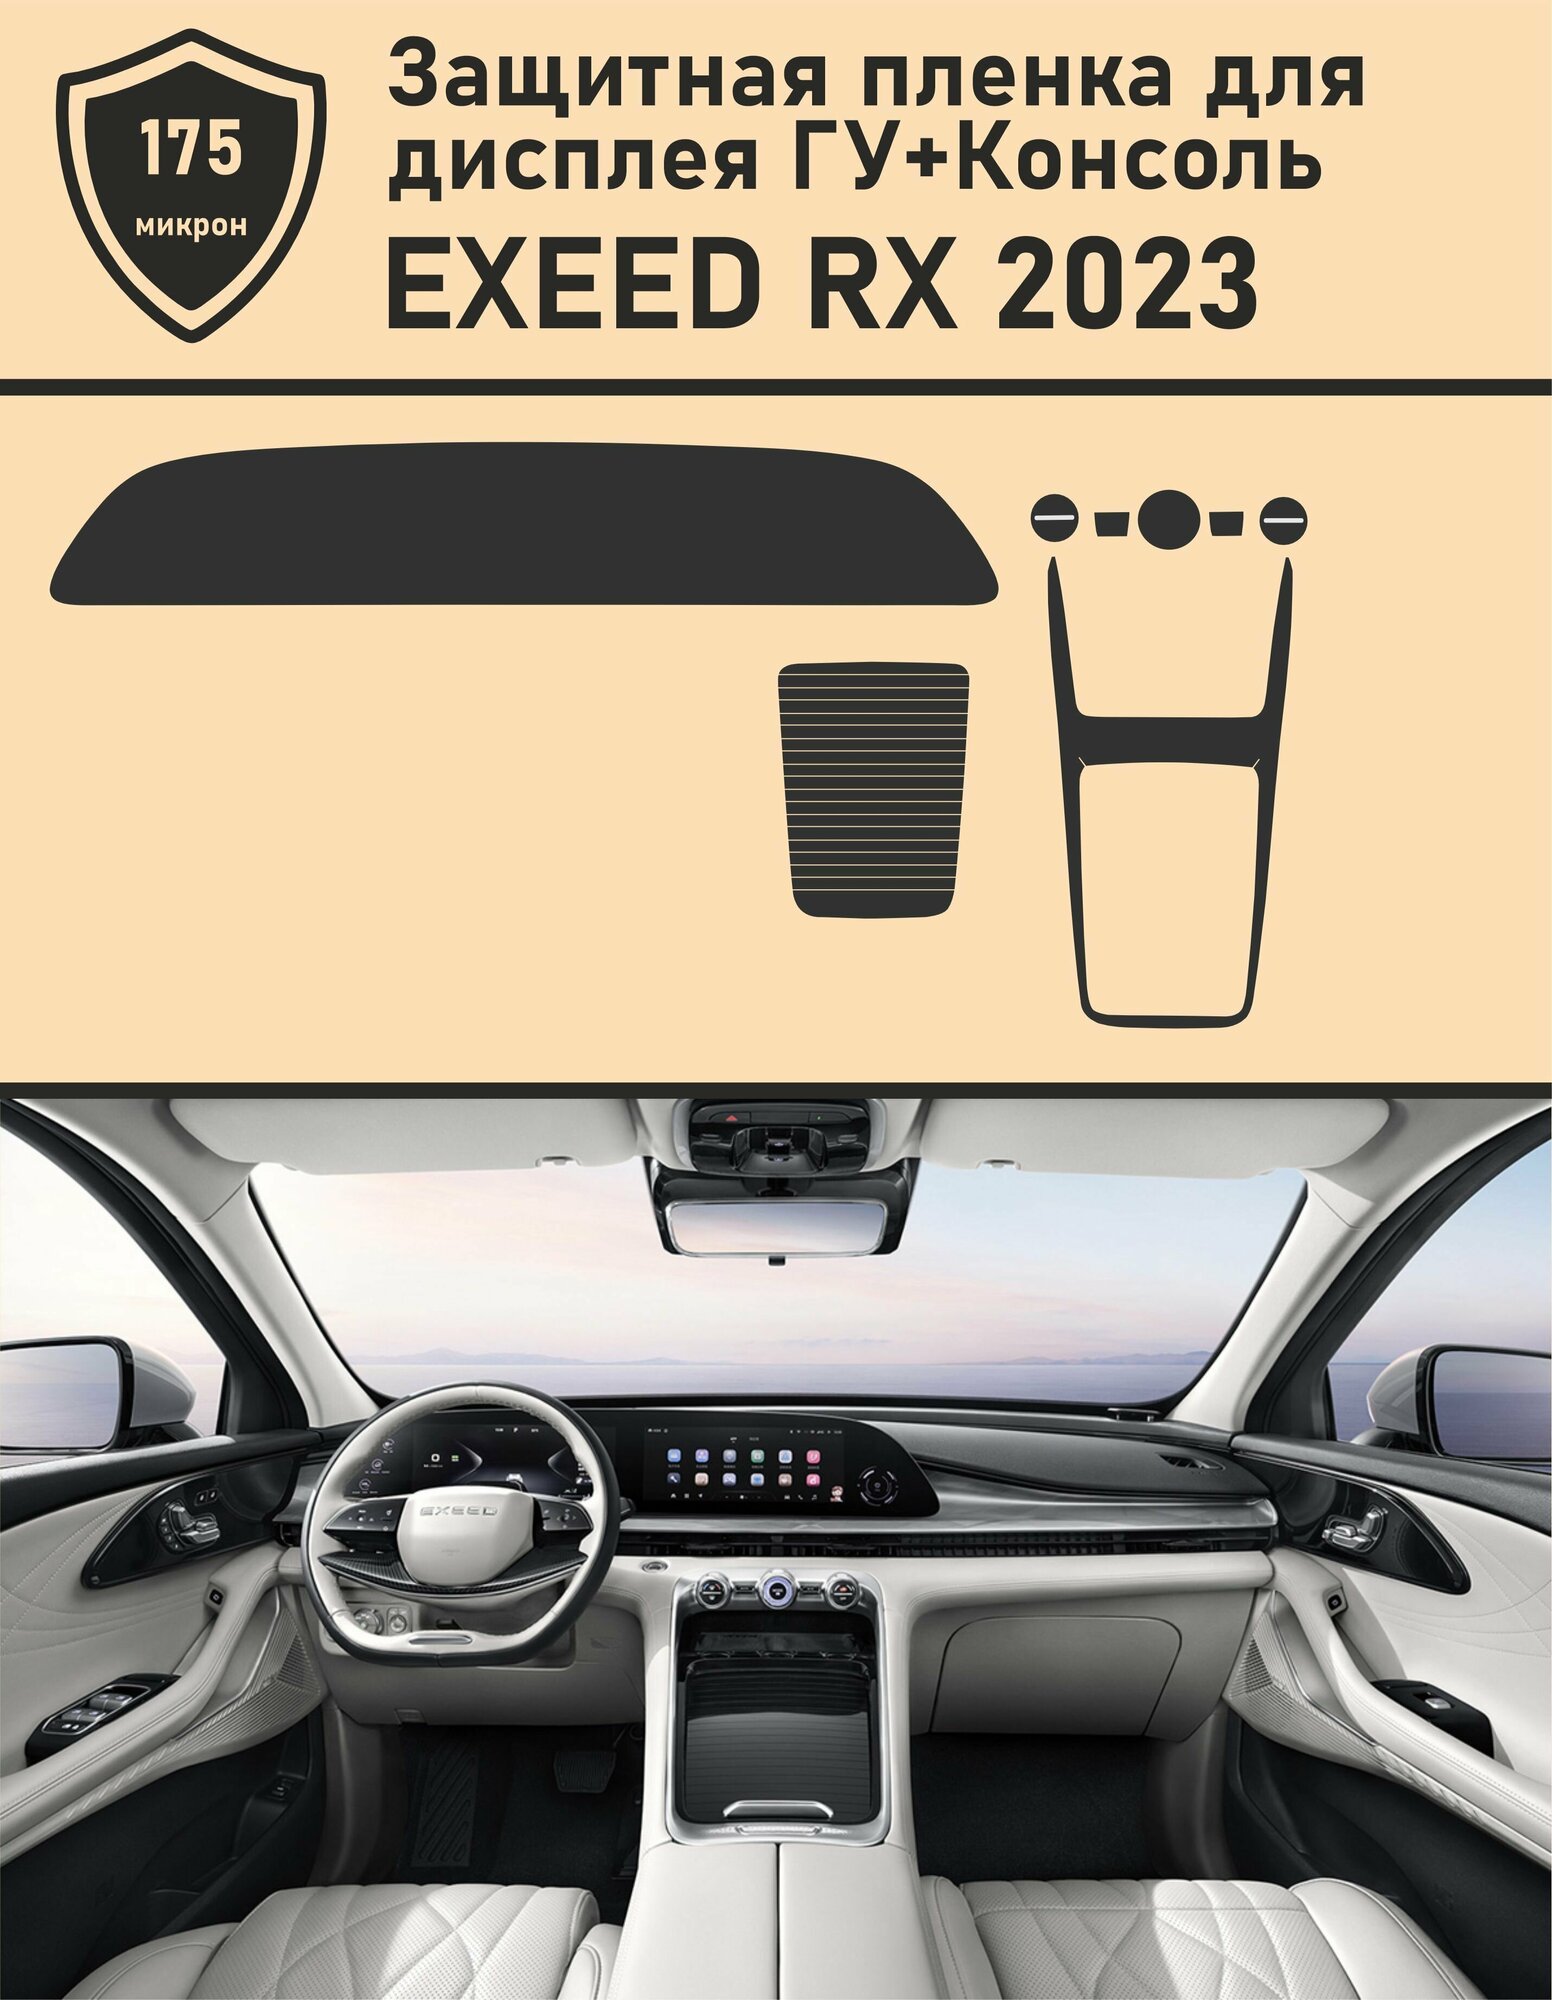 EXEED RX 2023/ Комплект защитных пленок дисплей ГУ+Консоль